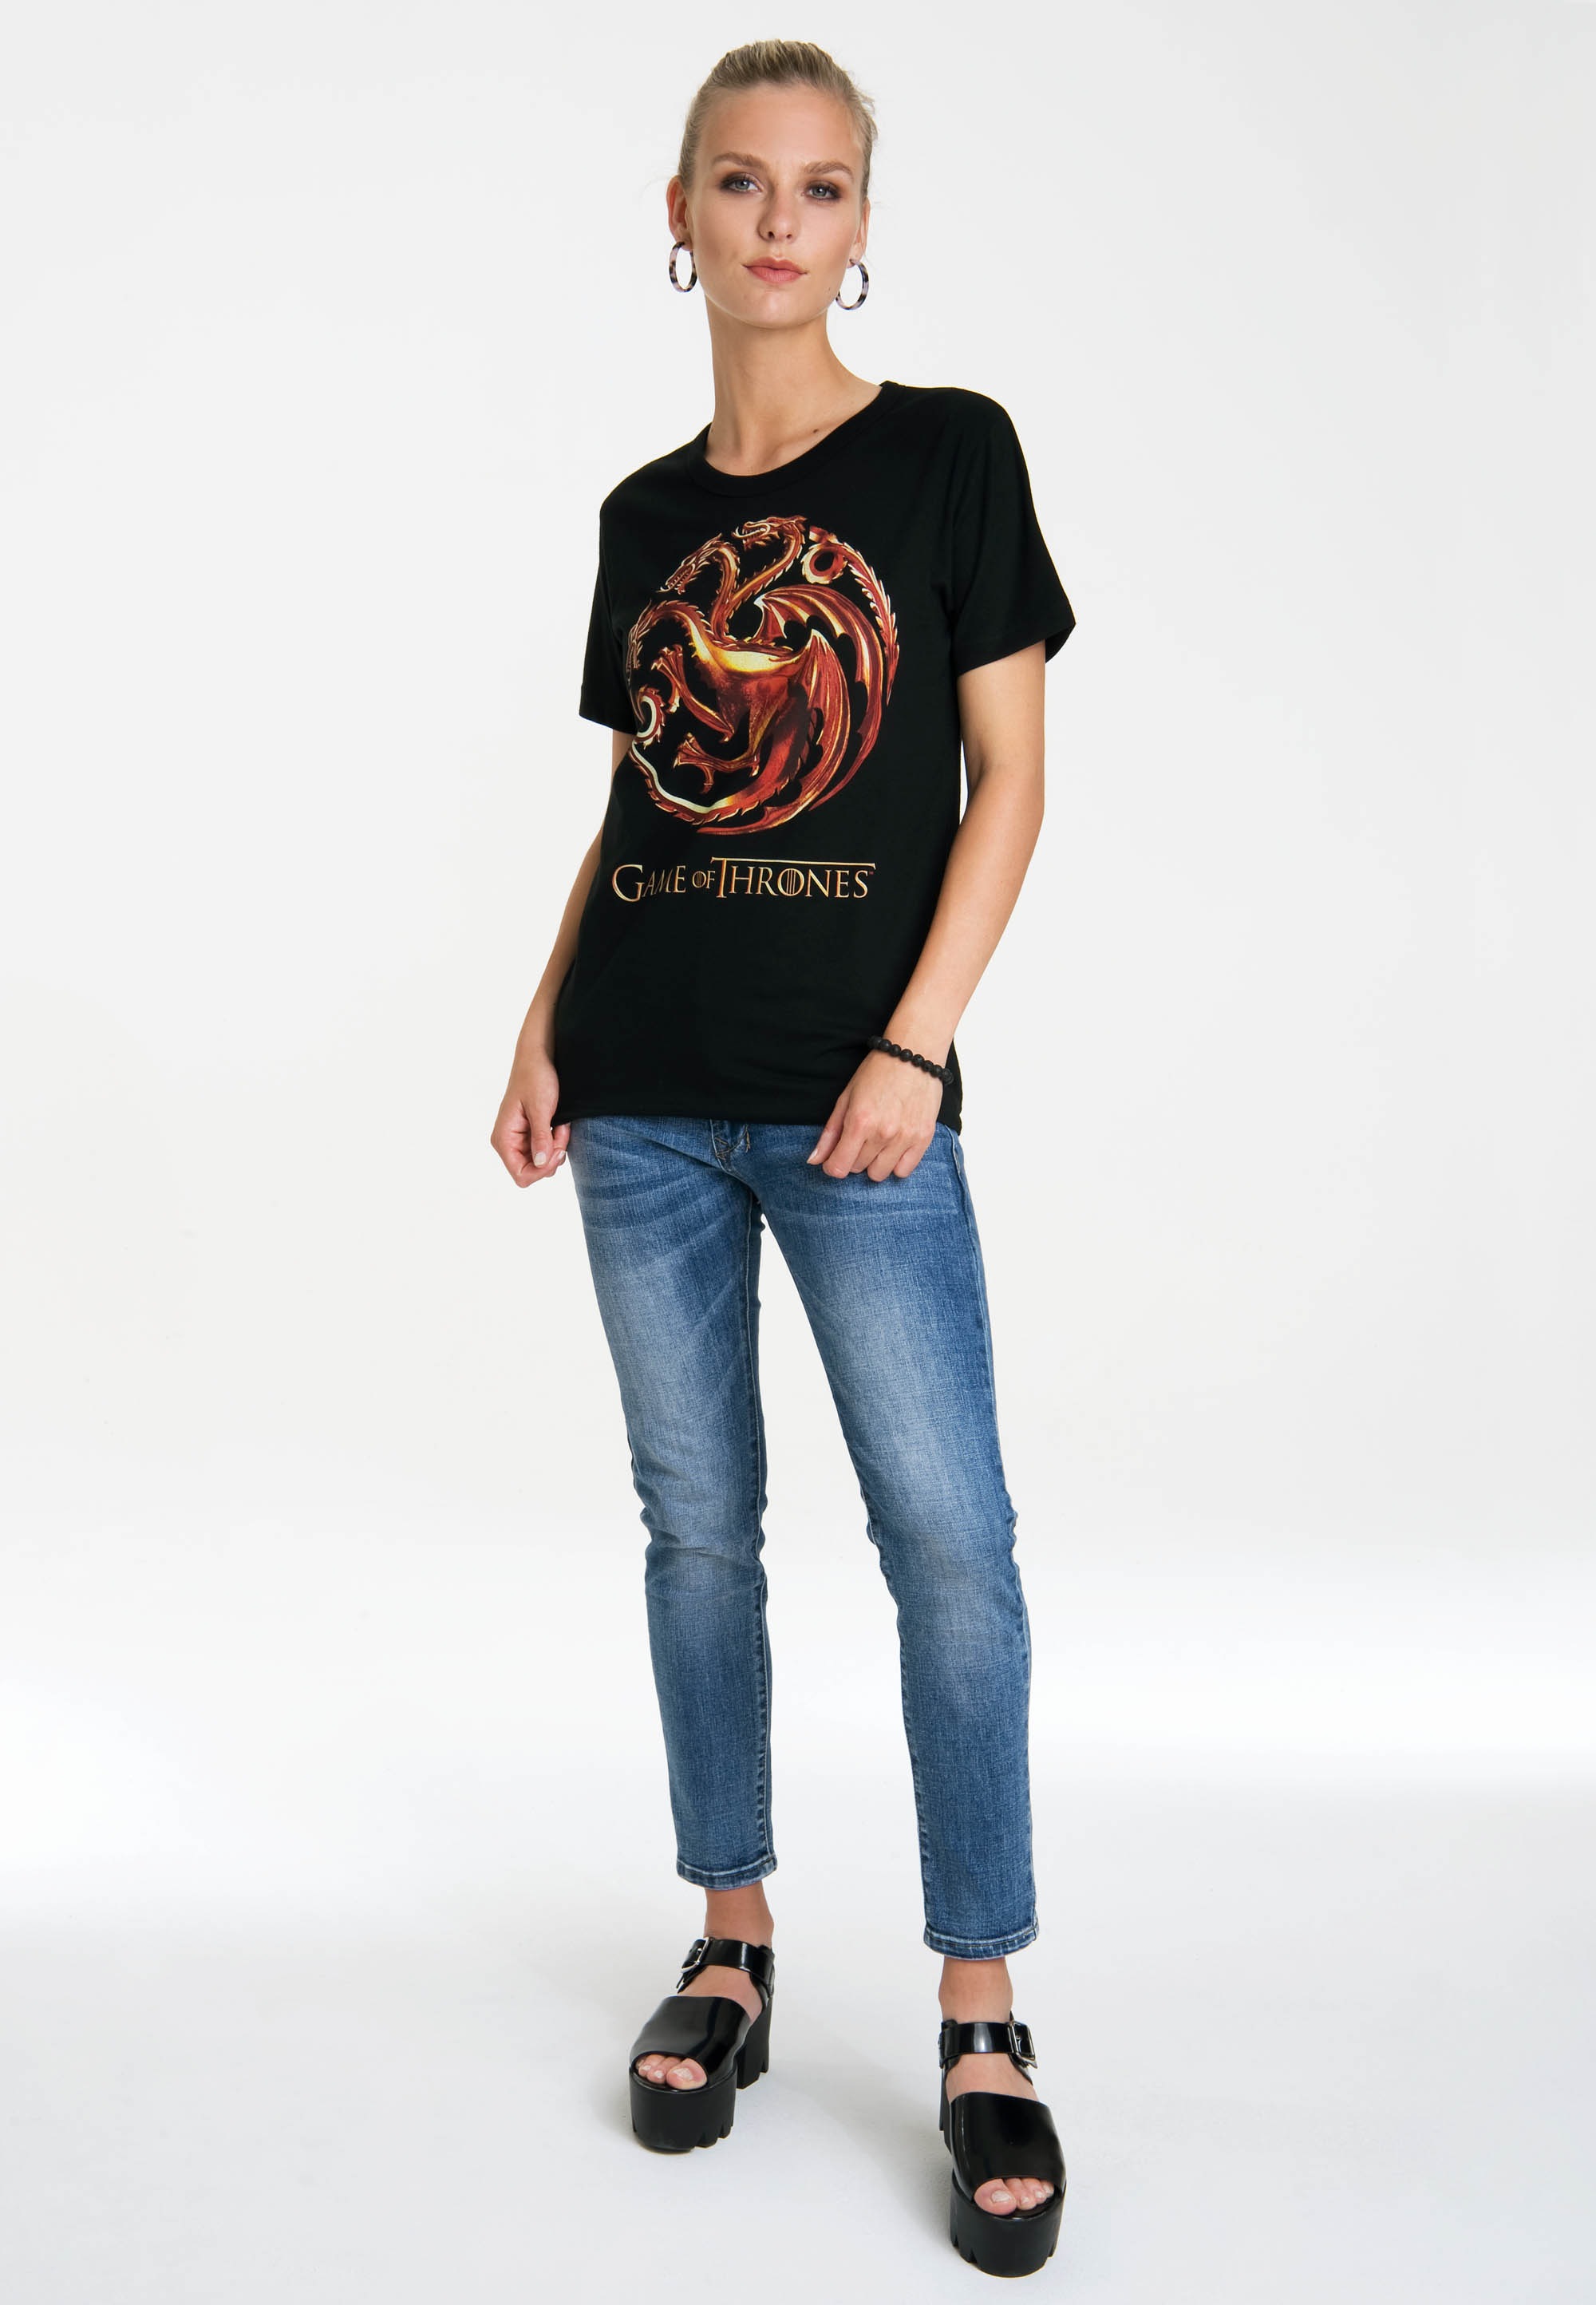 LOGOSHIRT T-Shirt »Game of Thrones«, mit lizenziertem Originaldesign für  kaufen | BAUR